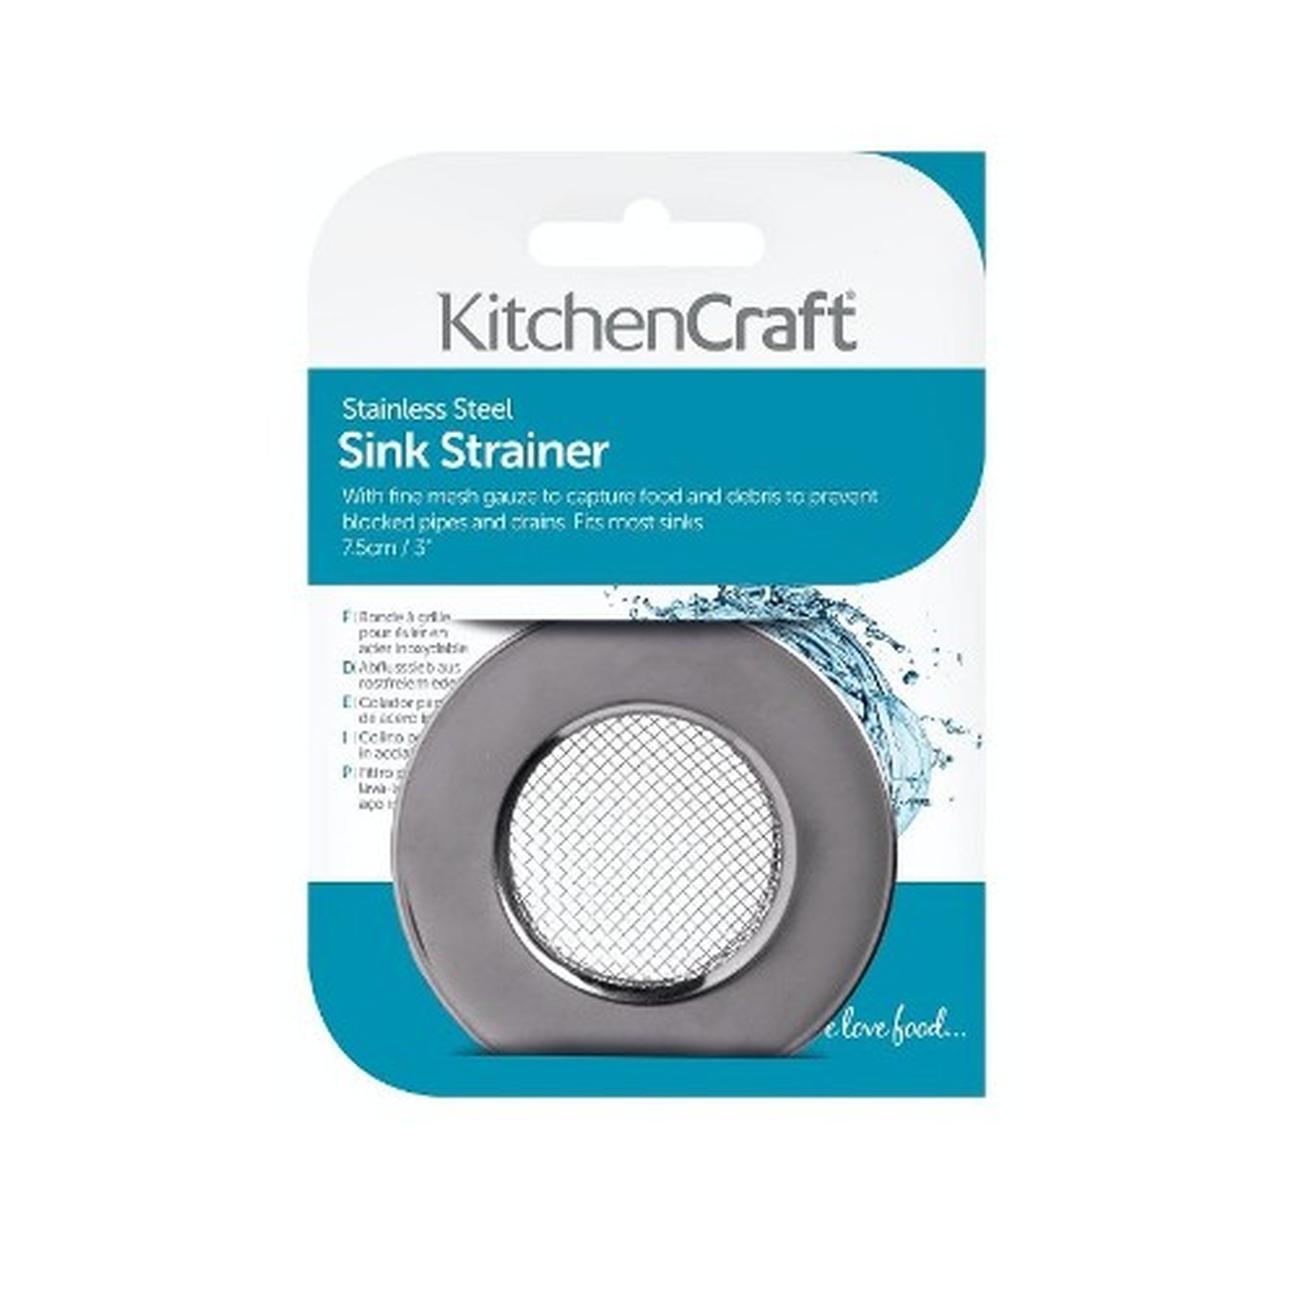 kitchencraft-sink-strainer-stainless-steel - KitchenCraft Stainless Steel Sink Strainer